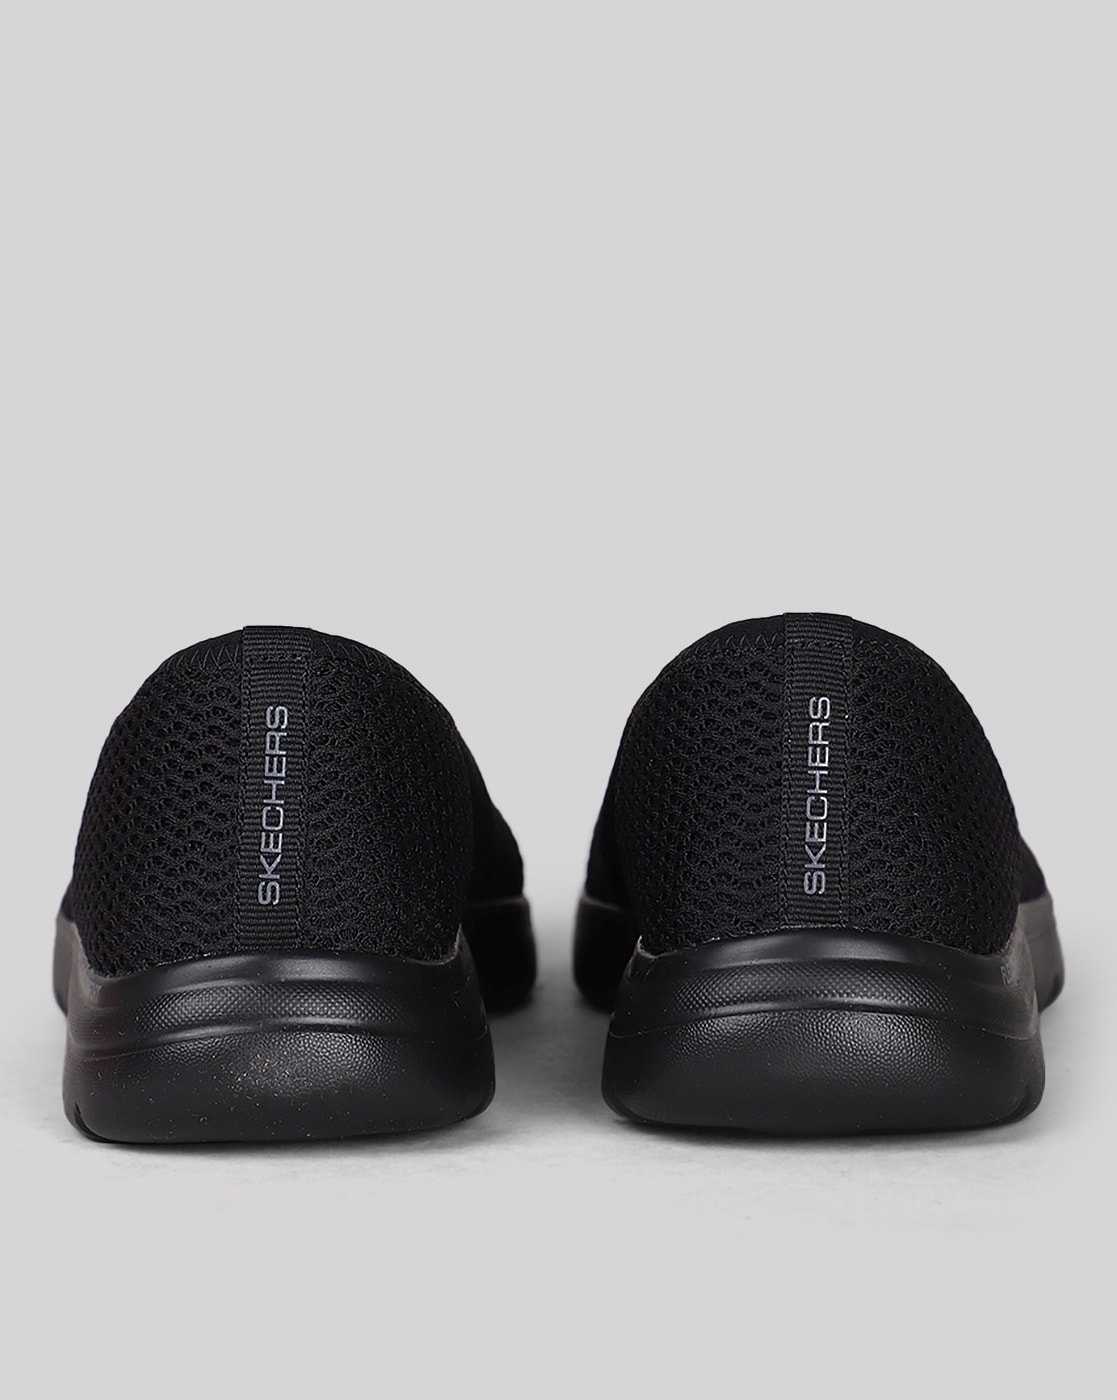 Skechers women slip-on sneaker Perfect Steps black 149754-BKRG, 69